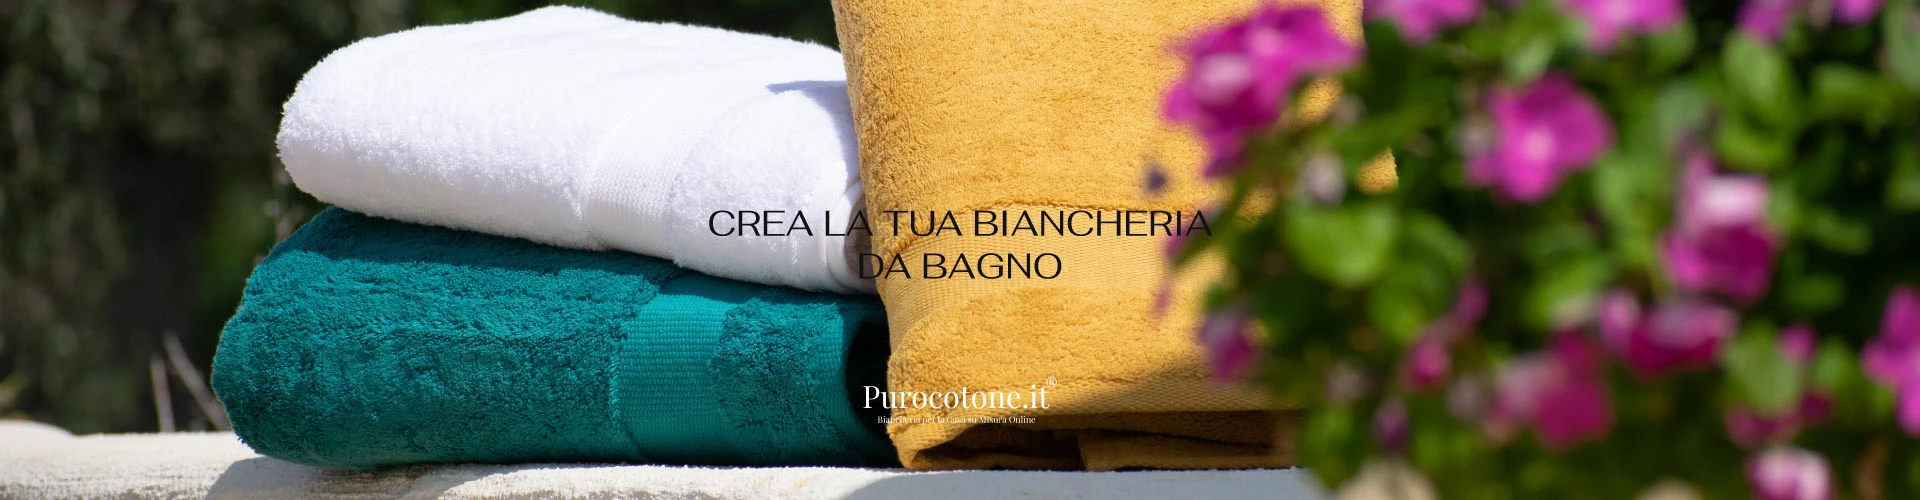 Biancheria Bagno Purocotone.it